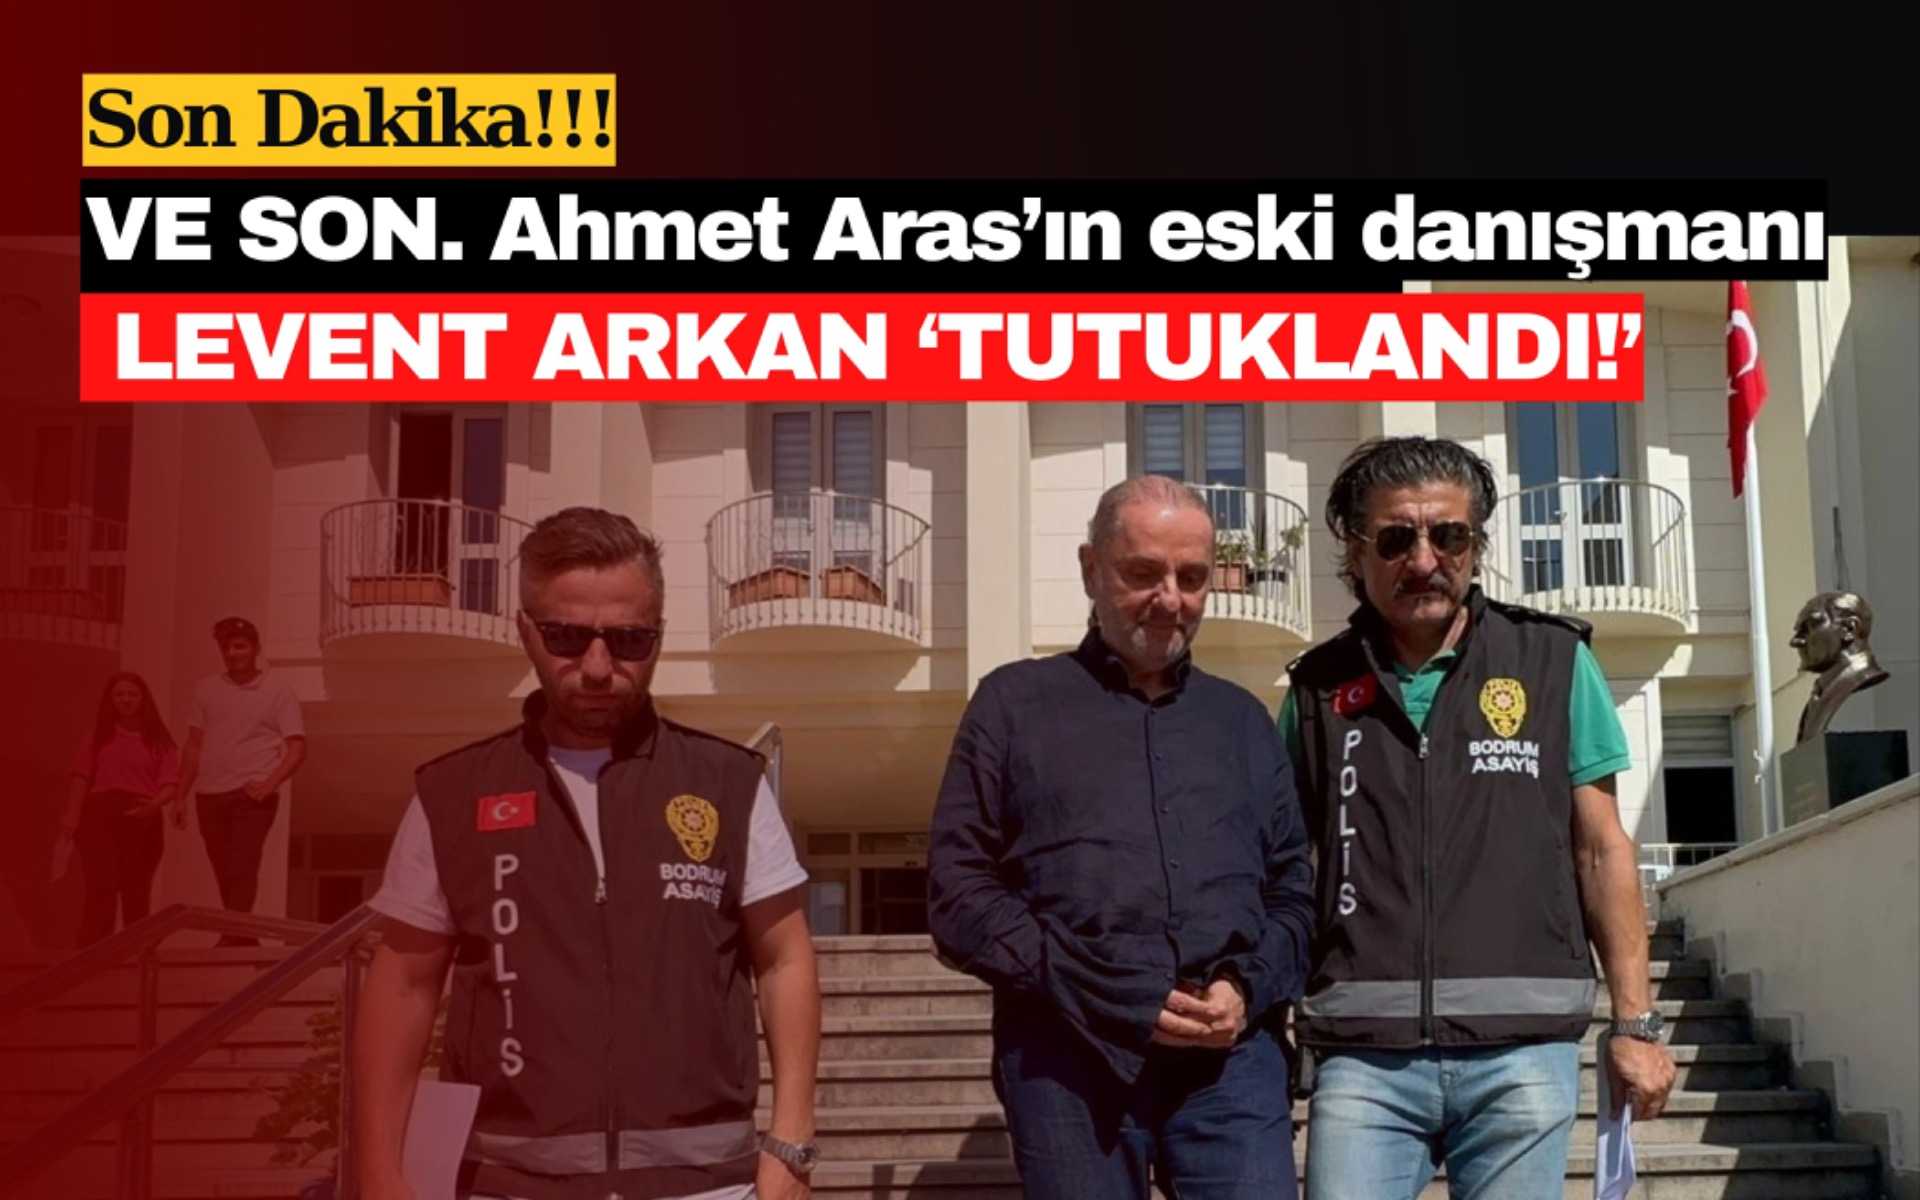 VE SON. Ahmet Aras’ın eski danışmanı Levent Arkan ‘TUTUKLANDI!’